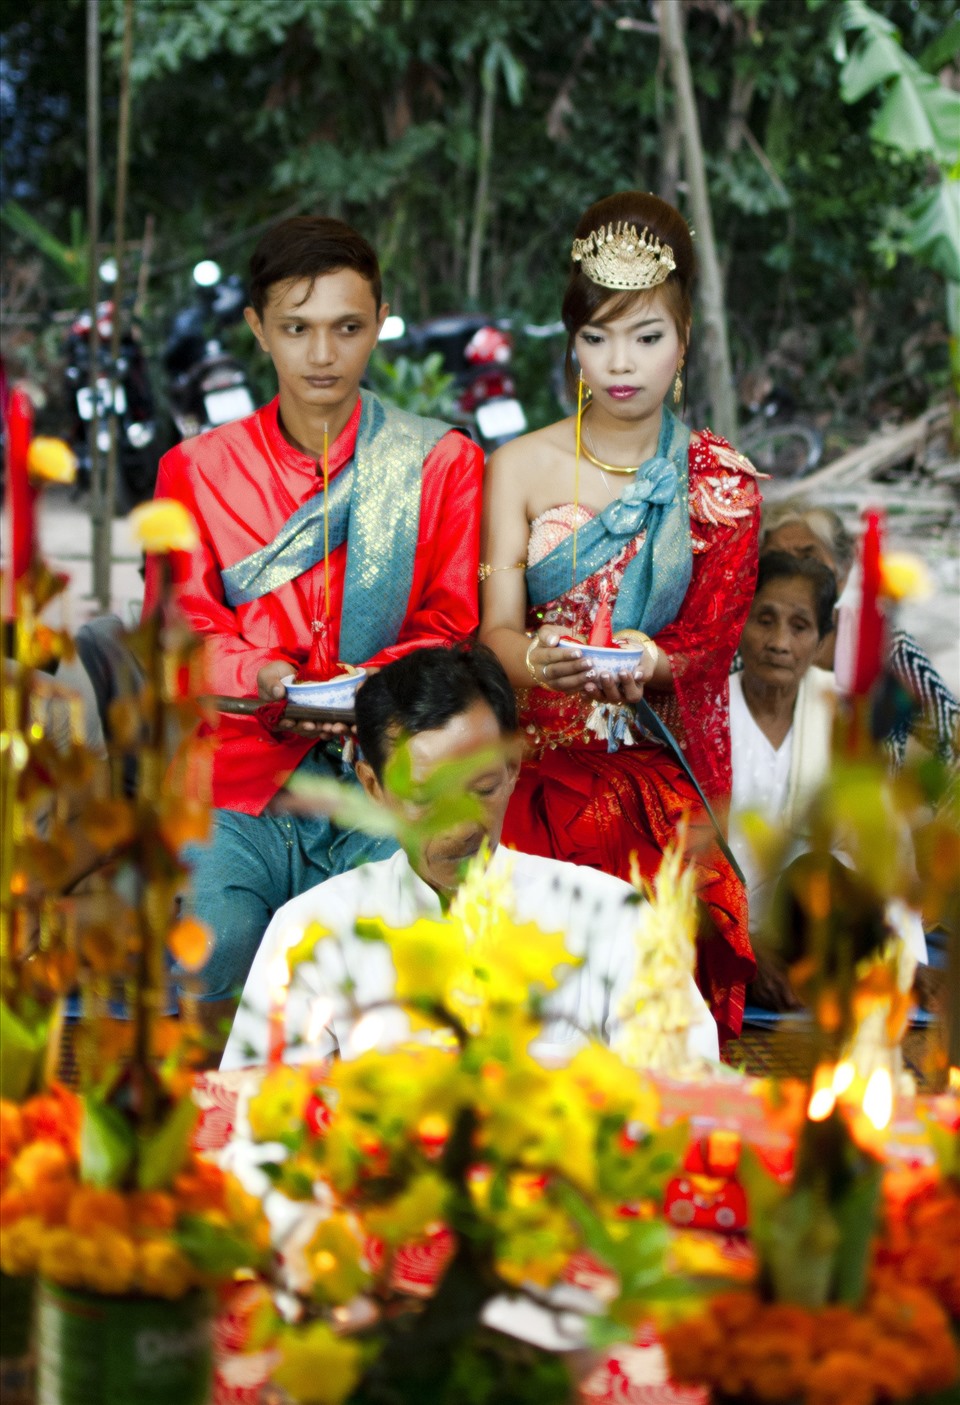 Người Khmer luôn có một sự nồng nhiệt, thân thiện và gần gũi trong giao tiếp. Với các bức ảnh chụp người Khmer, bạn sẽ được chứng kiến những nét đẹp tâm hồn của con người này. Hãy để những bức ảnh này truyền cảm hứng và đem đến cho bạn nhiều khích lệ.